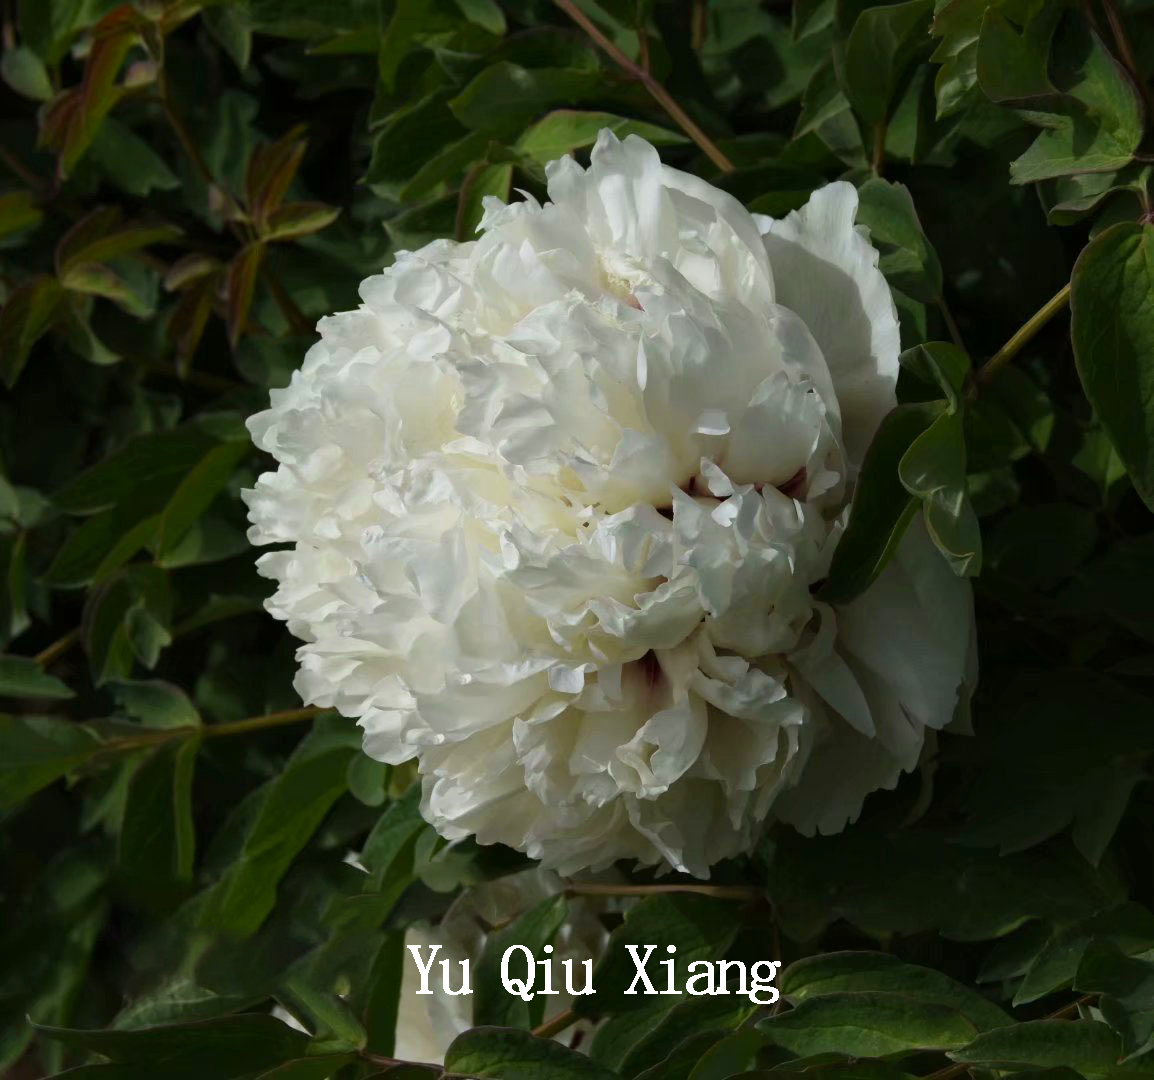 Yu Qiu Xiang，Spherical Shaped Tree Peony